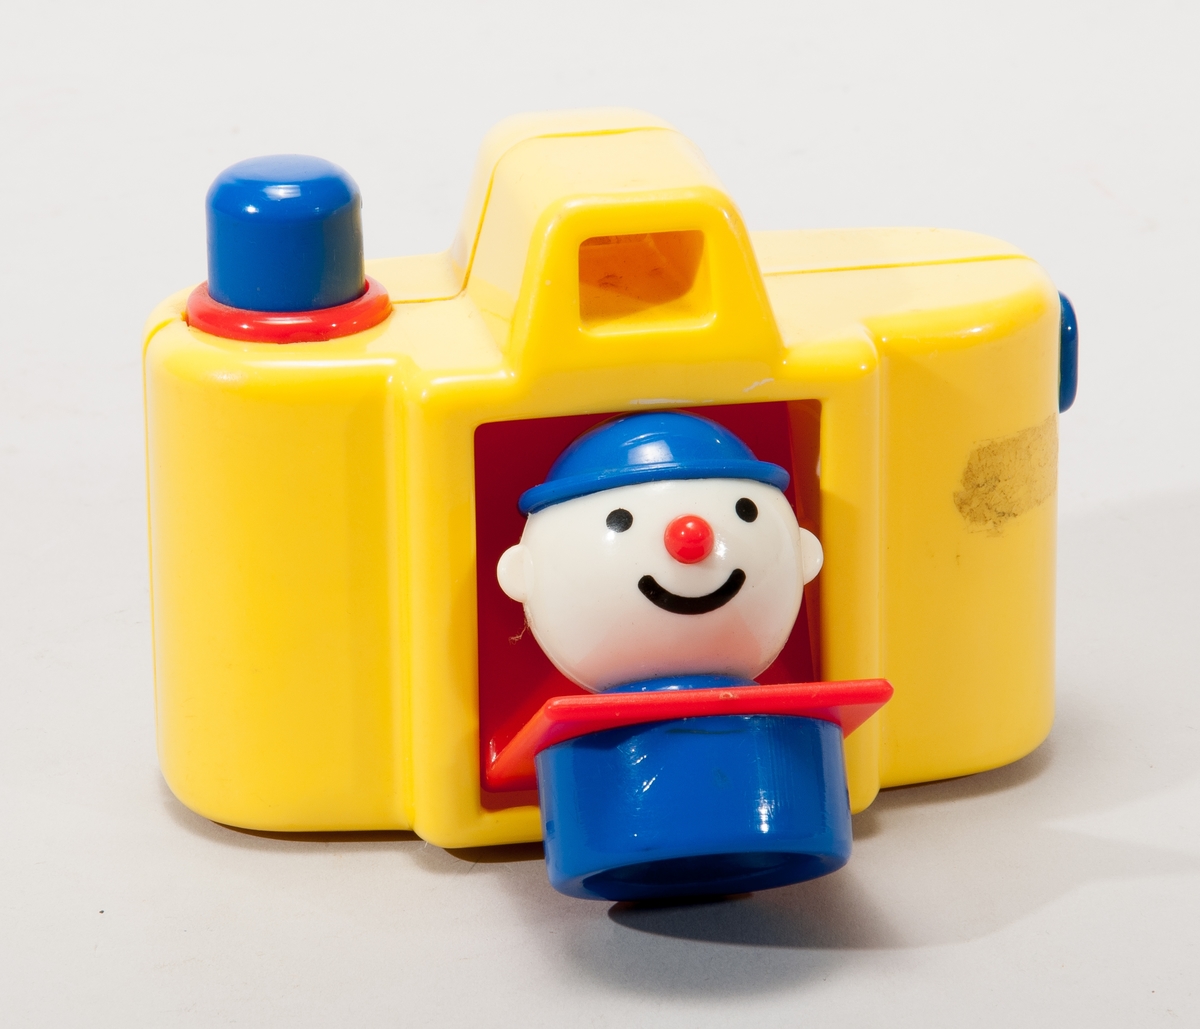 Leksakskamera i gul plast, linsen fälls ner när man trycker på utlösaren och ett clownhuvud visas då.